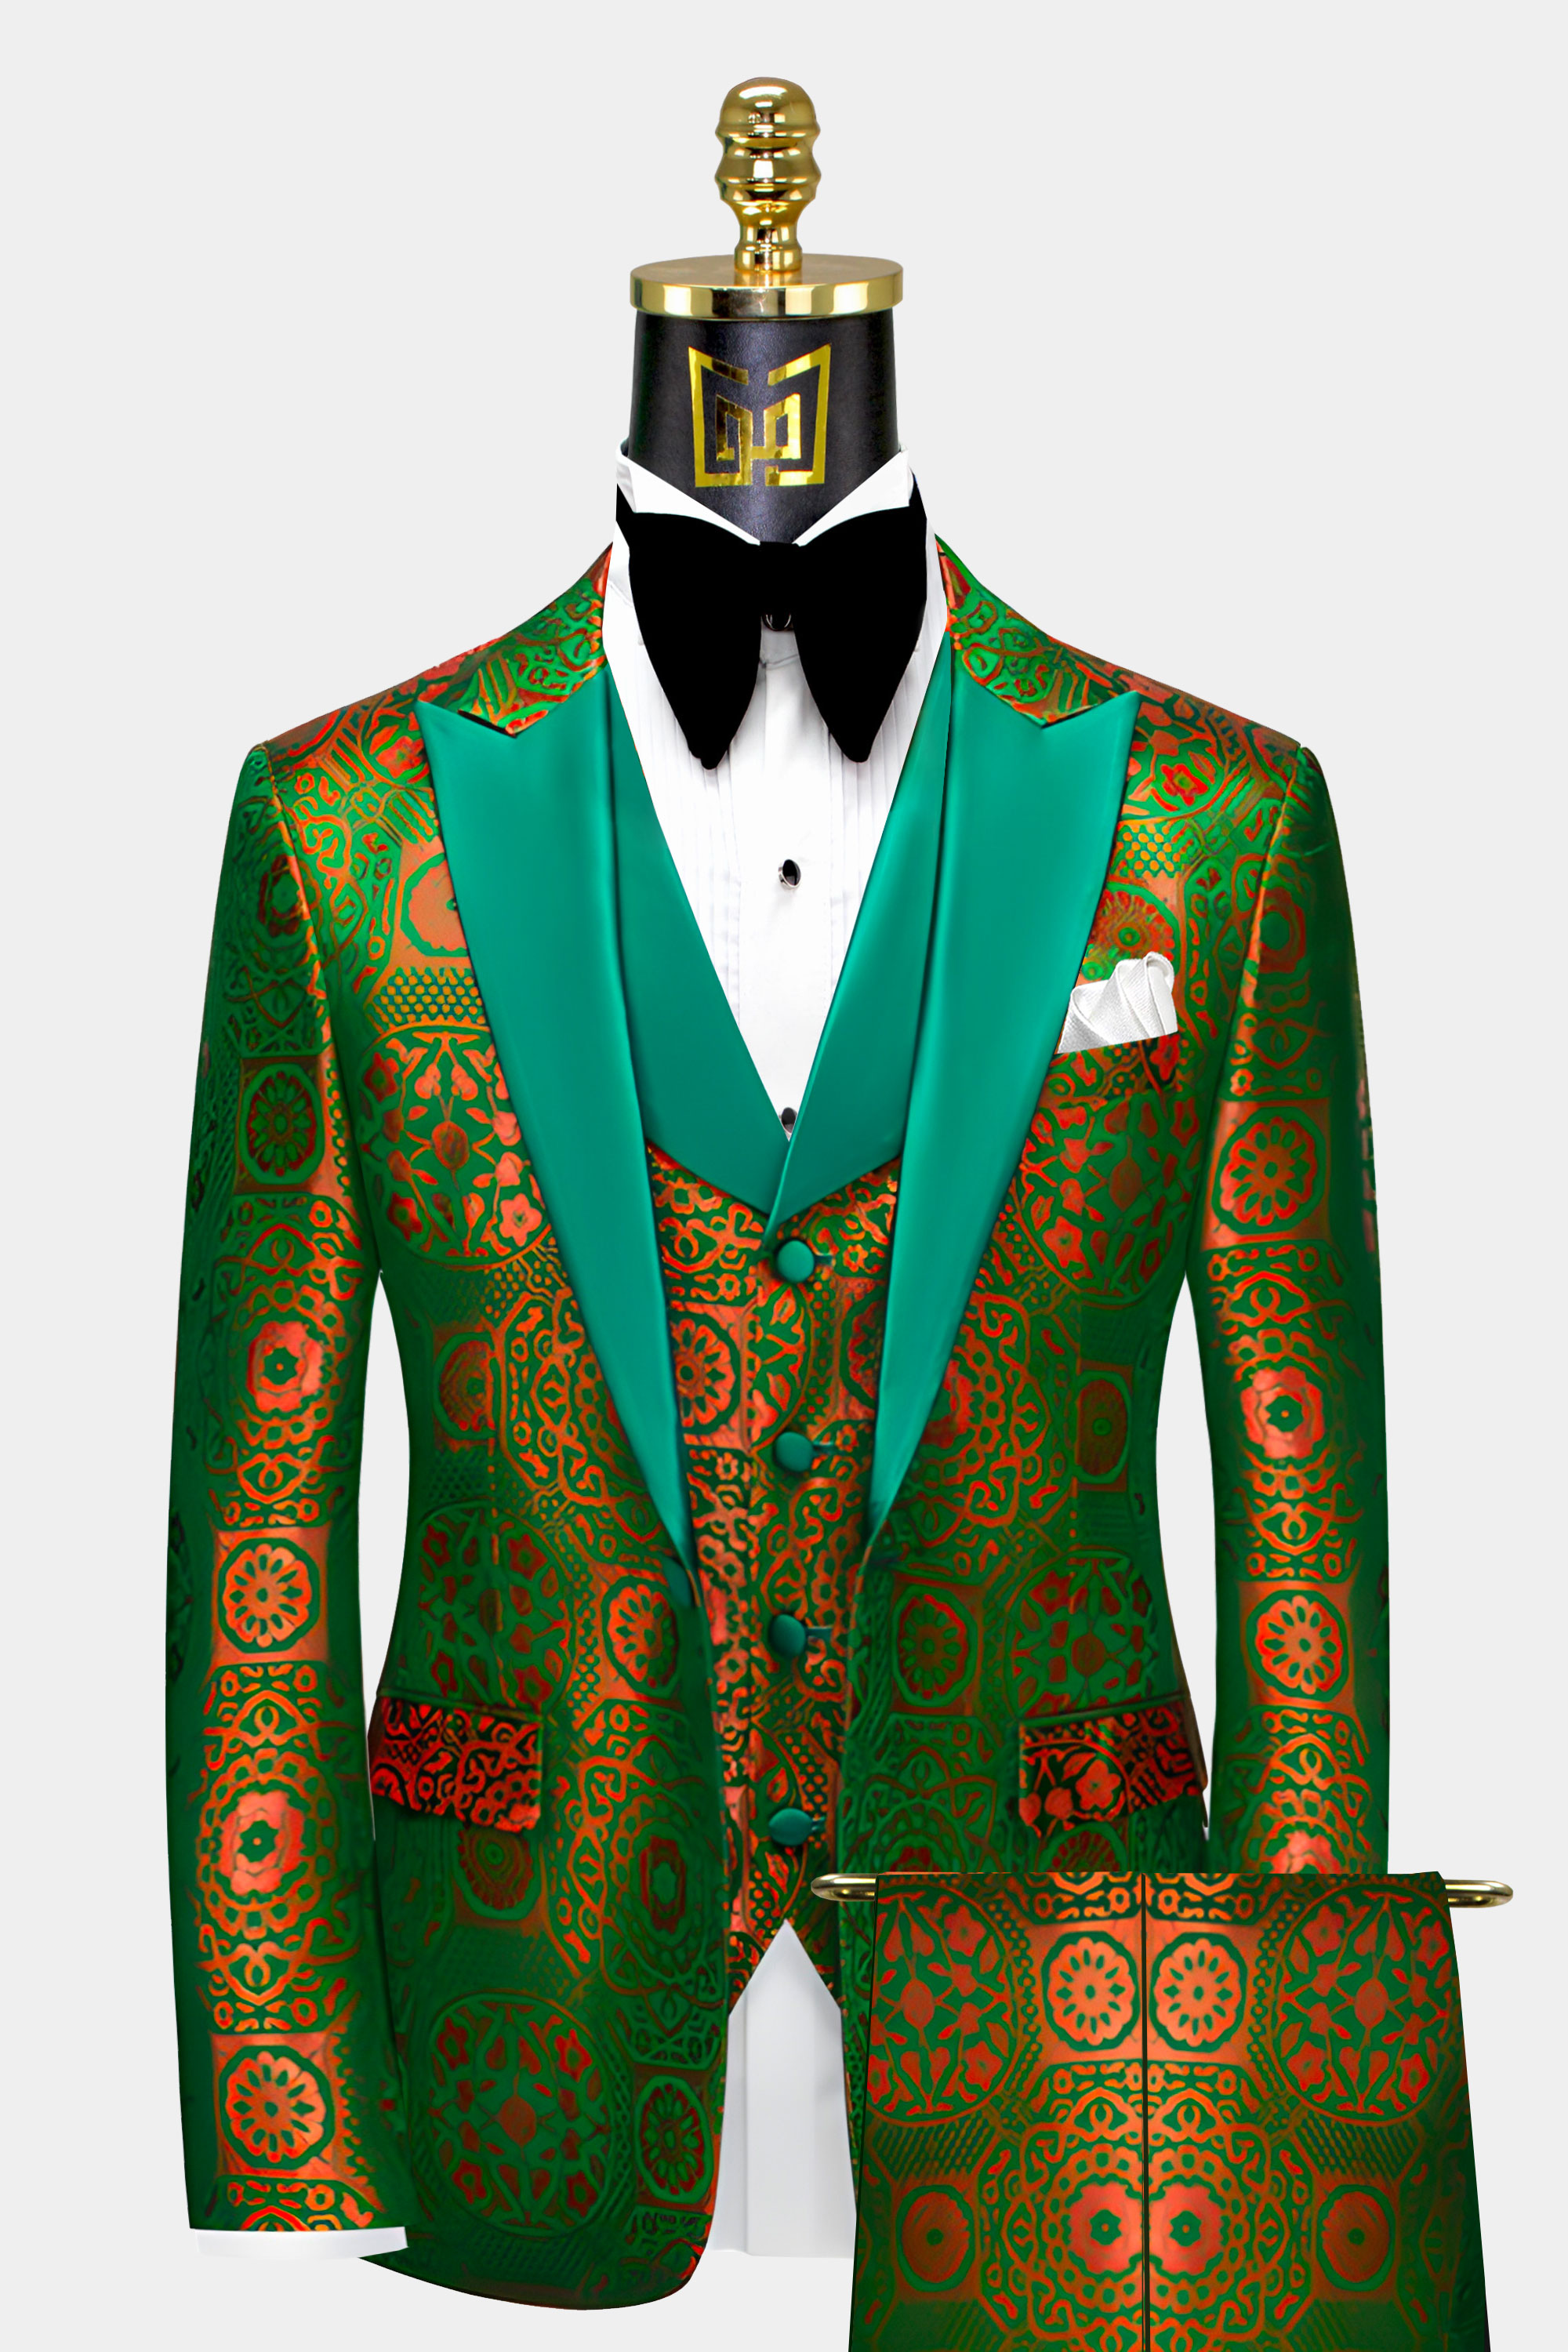 Orange-and-Green-Tuxedo-Prom-Groom-Wedding-Suit-For-Men-from-Gentlemansguru.com